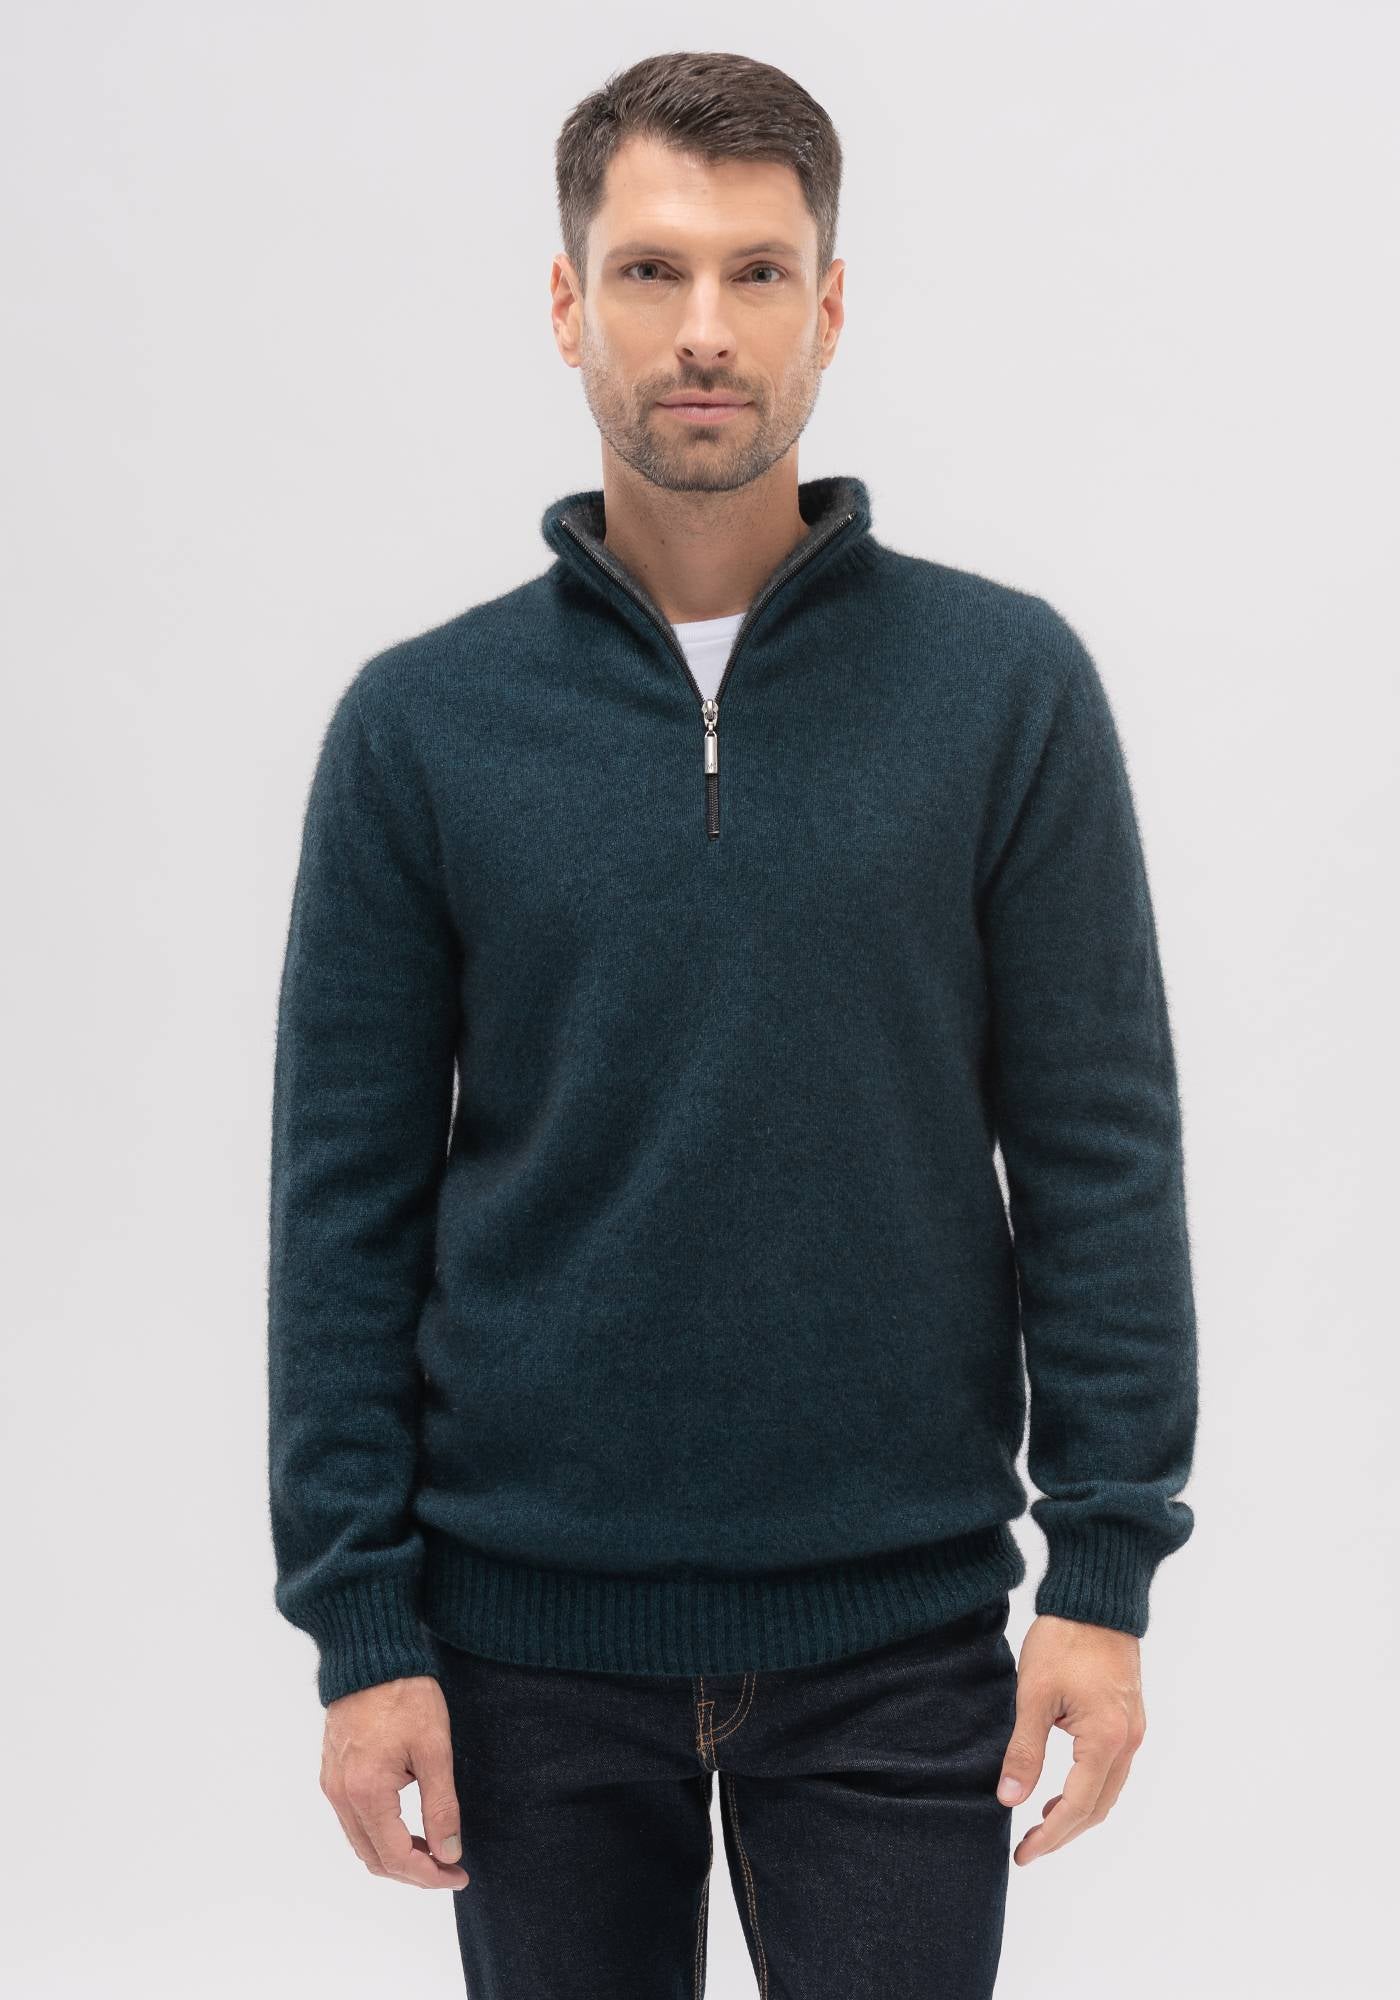 Merinomink Contrast Half Zip Sweater